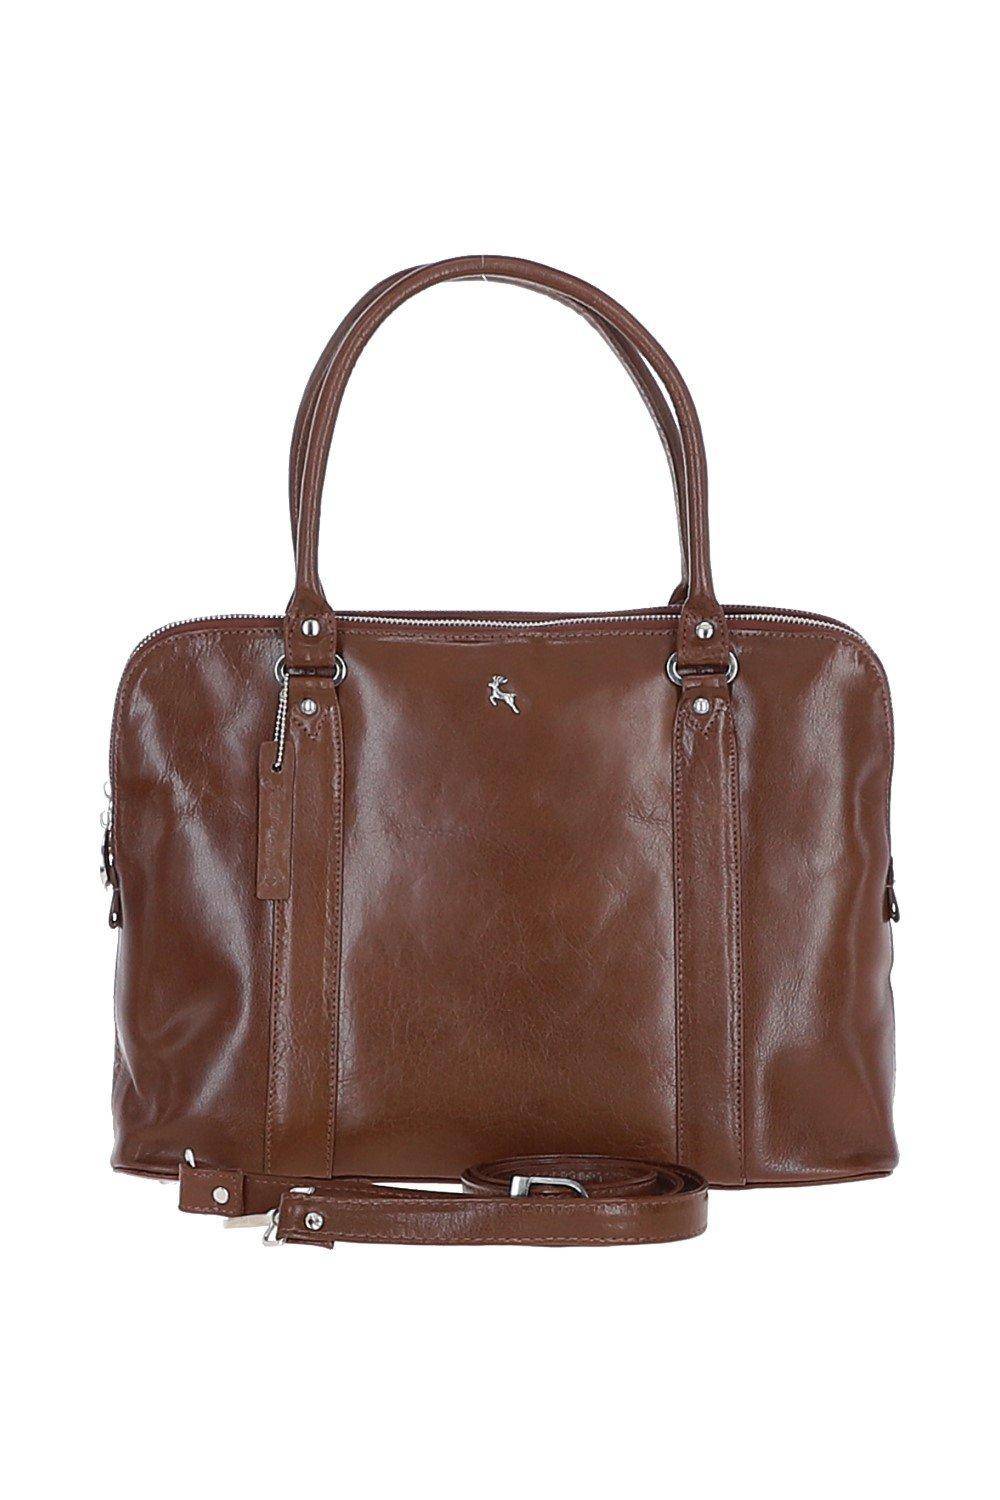 Большая трехсекционная кожаная сумка растительного дубления Ashwood Leather, коричневый сумка планшет повседневная натуральная кожа вмещает а4 внутренний карман регулируемый ремень черный